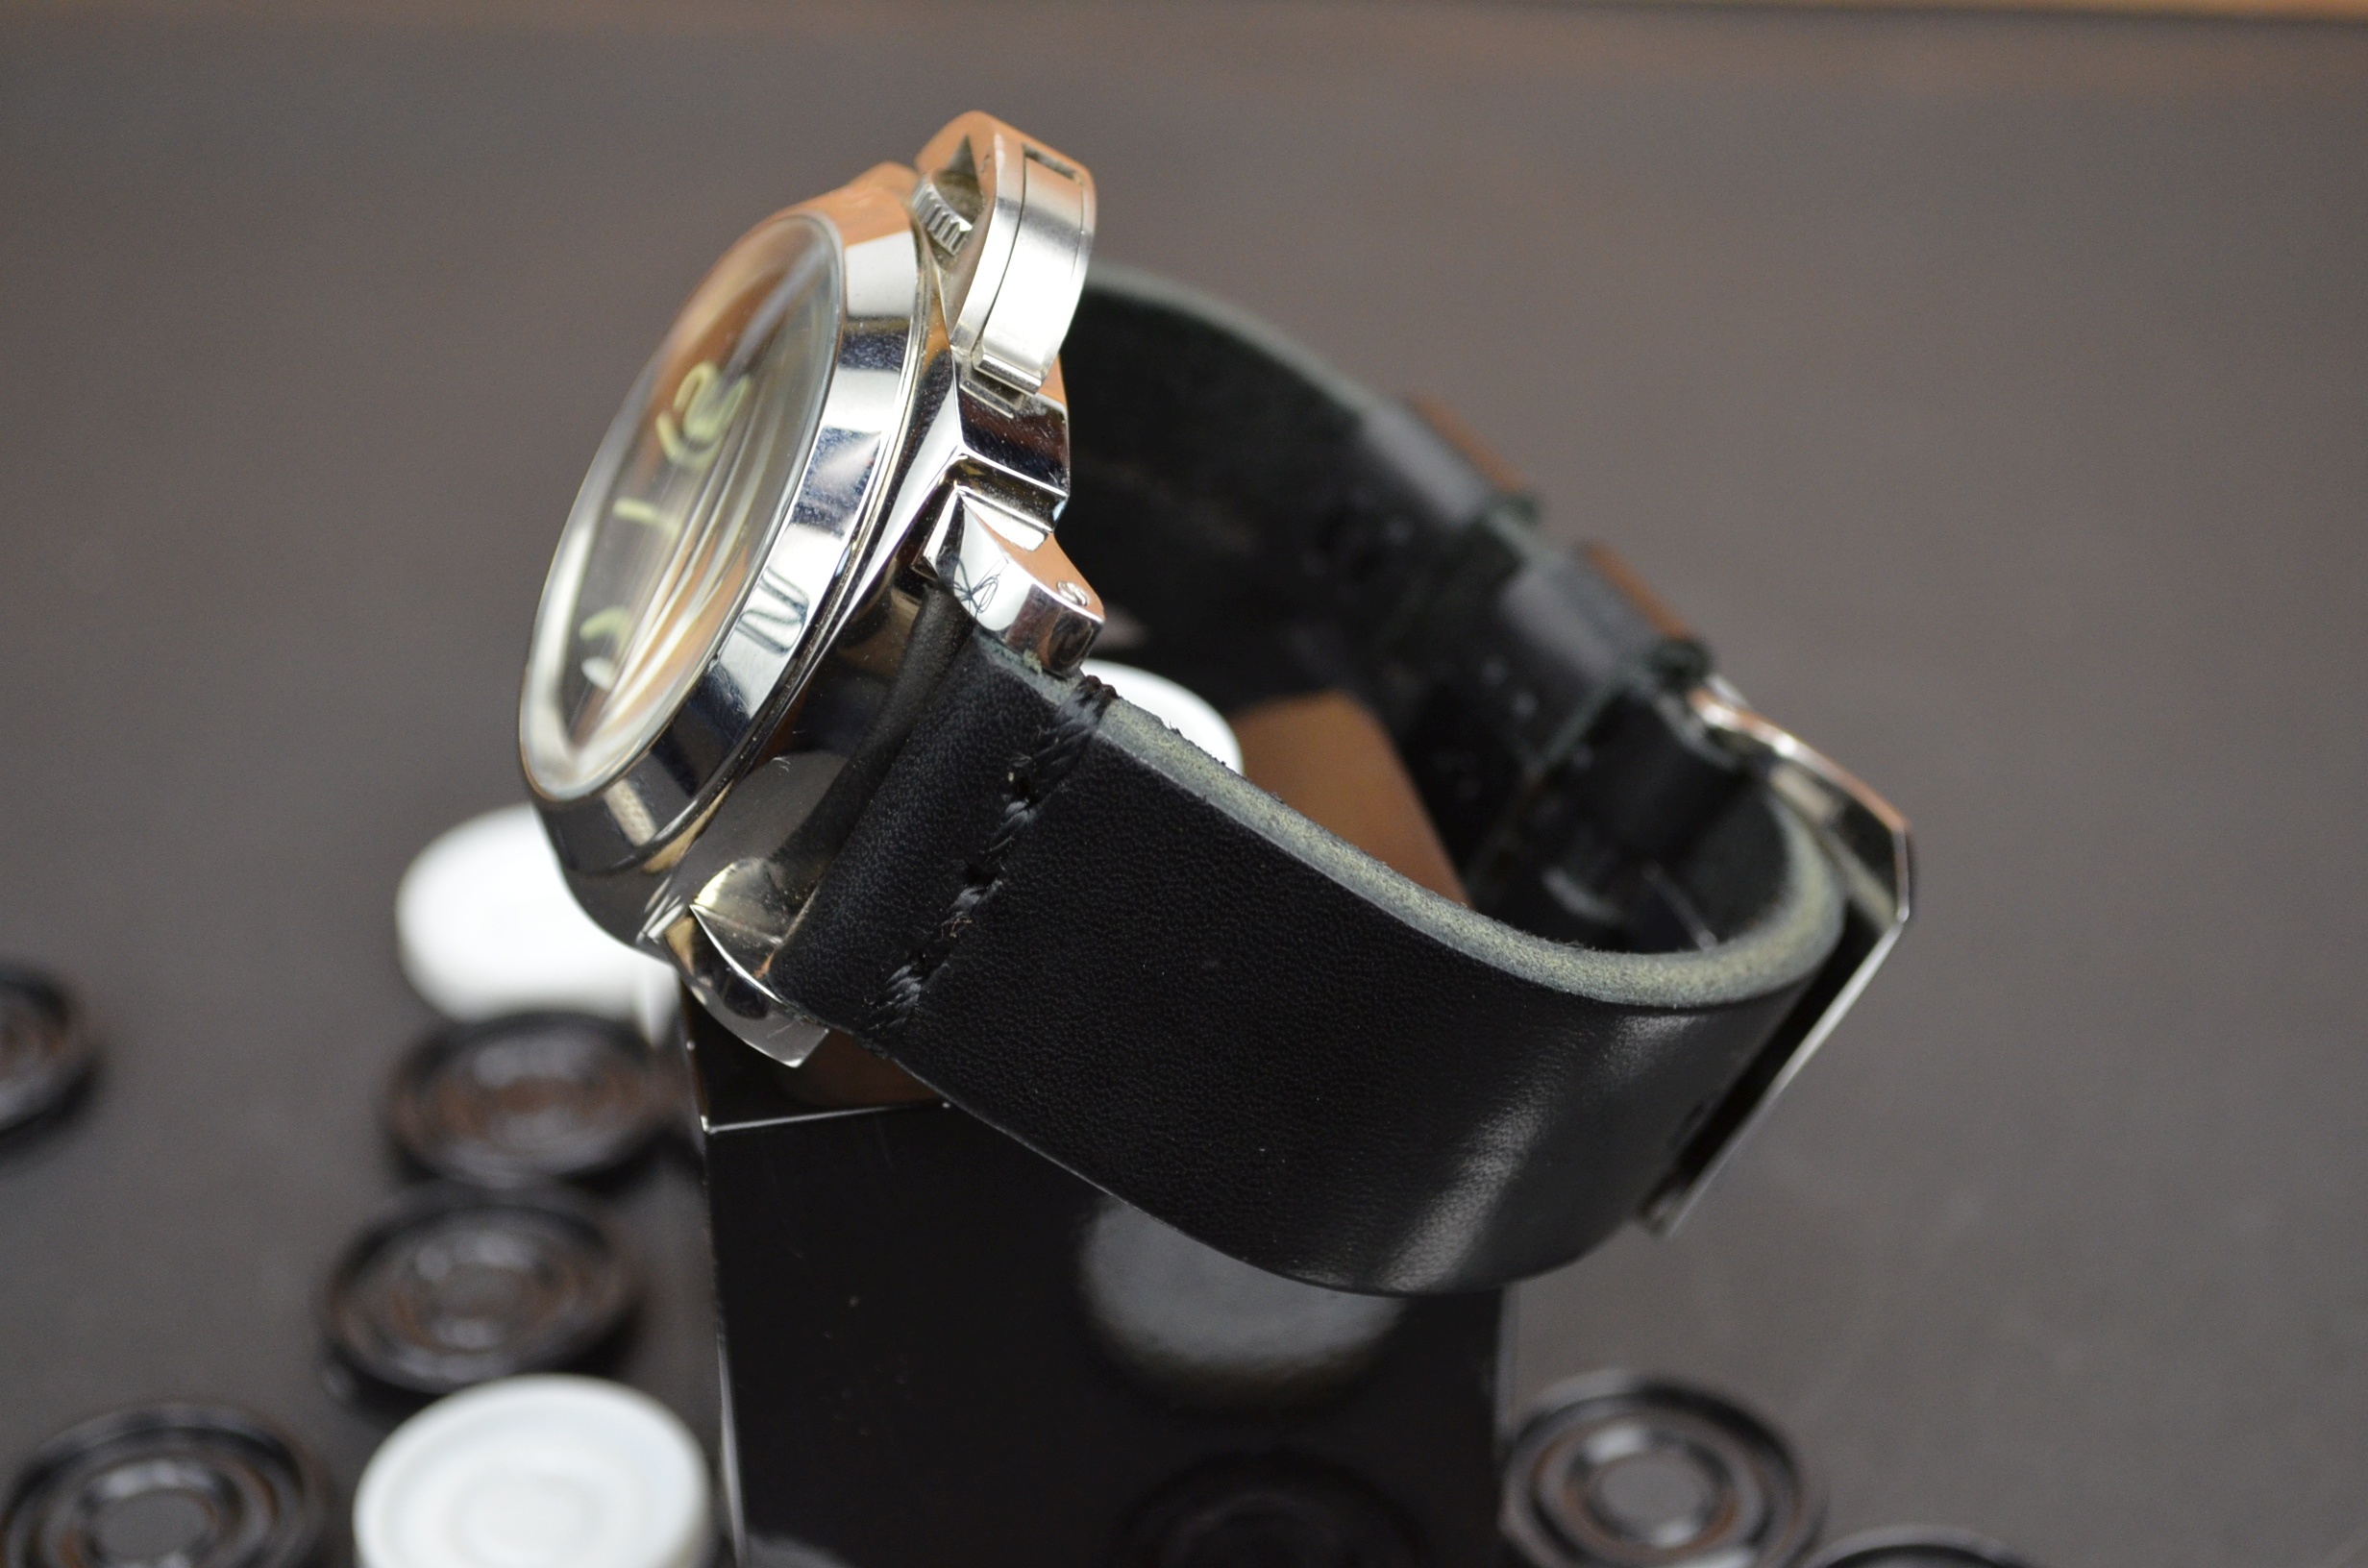 BLACK es una de nuestras correas reloj de piel hechas a mano, con piel de becerro. De color negro, con un espesor de 4 - 4.5 mm.